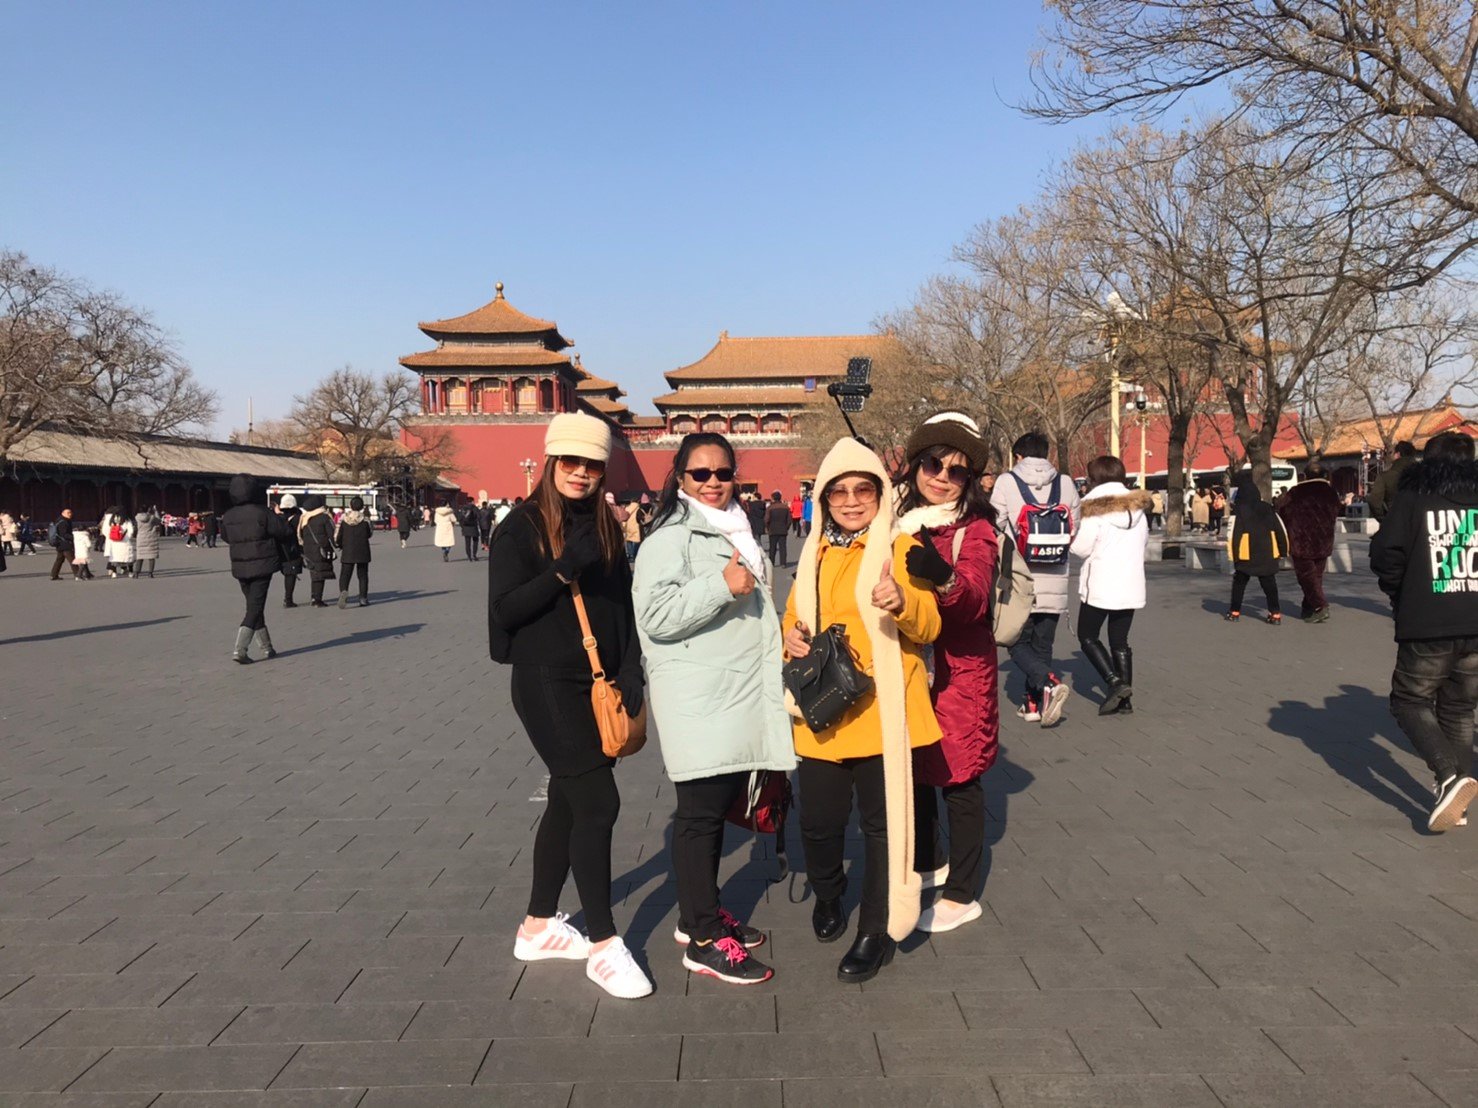 ทริปท่องเที่ยวปักกิ่ง ประเทศจีน ชุดที่1